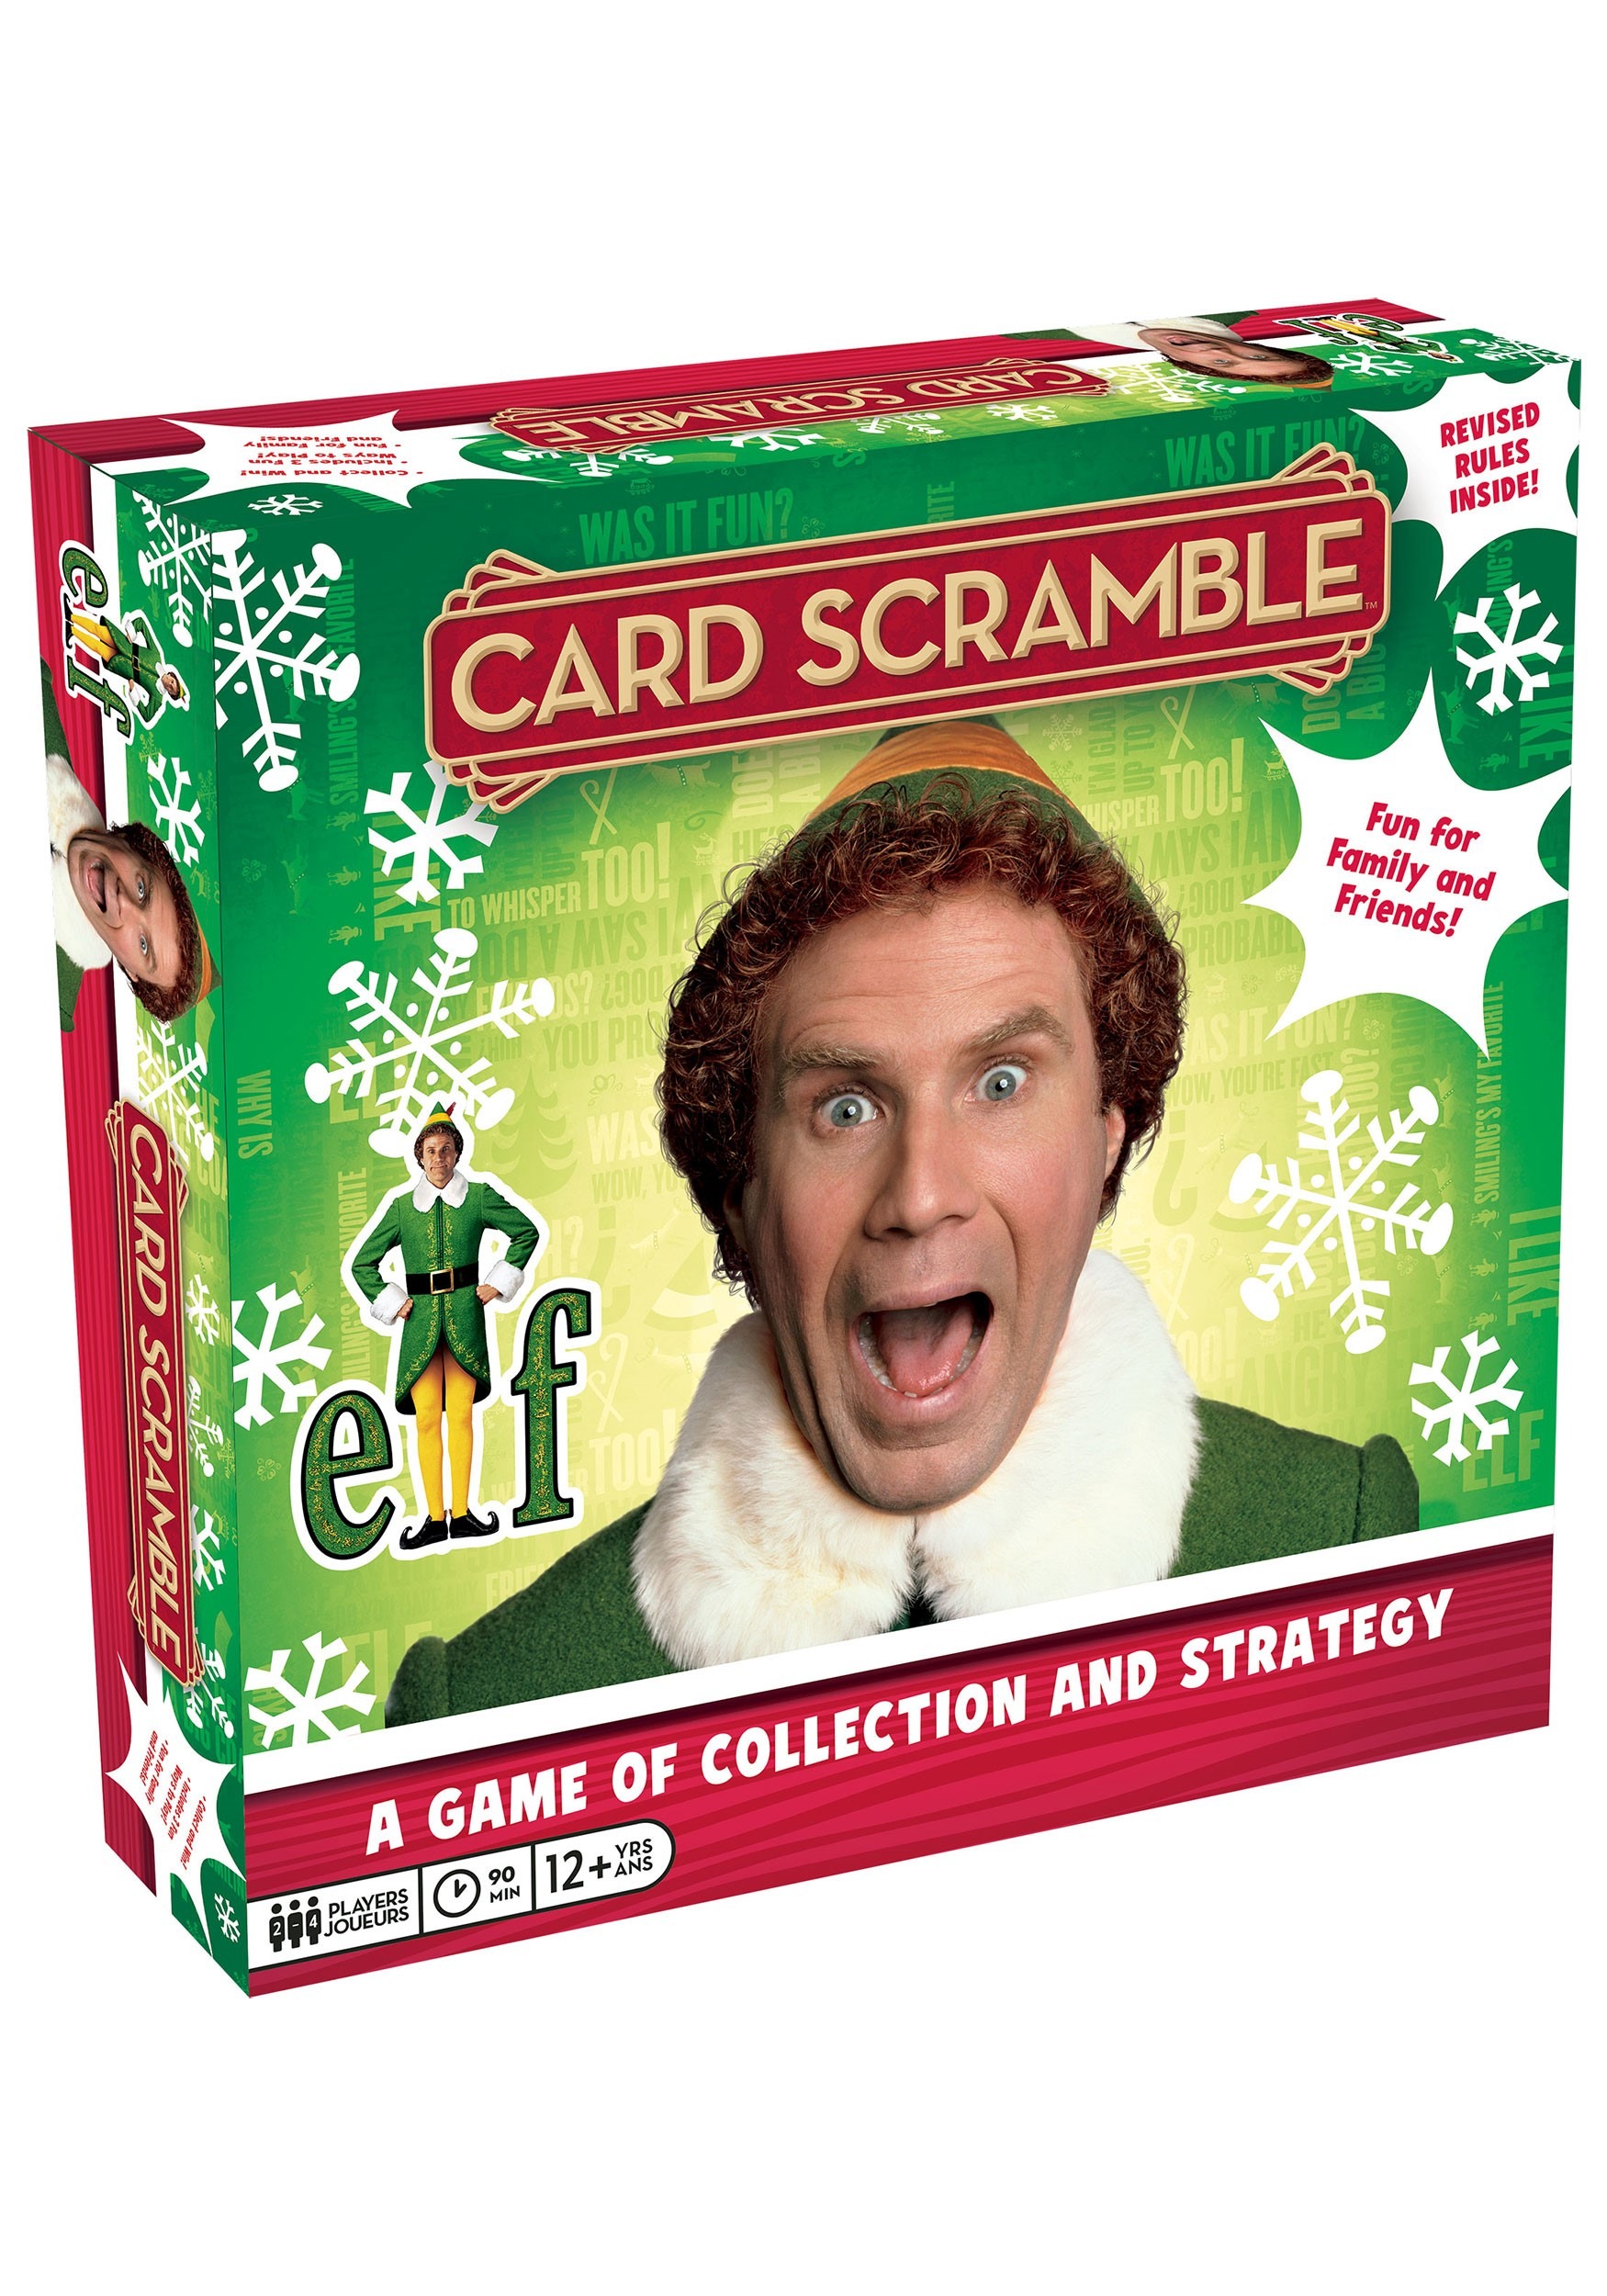 Buddy the Elf Scramble Card Game